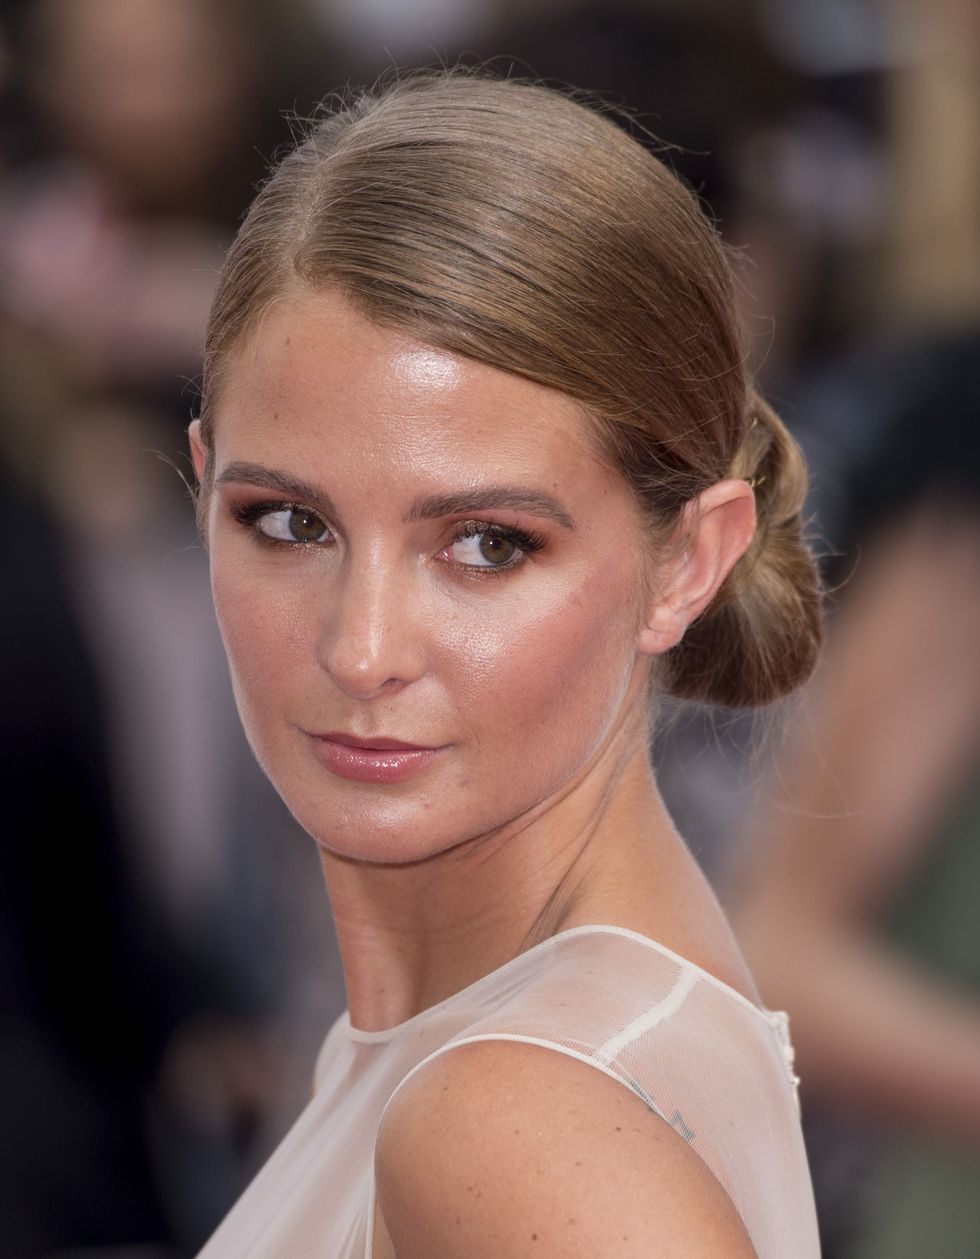 TV BAFTAs 2015 beauty looks - Millie Mackintosh